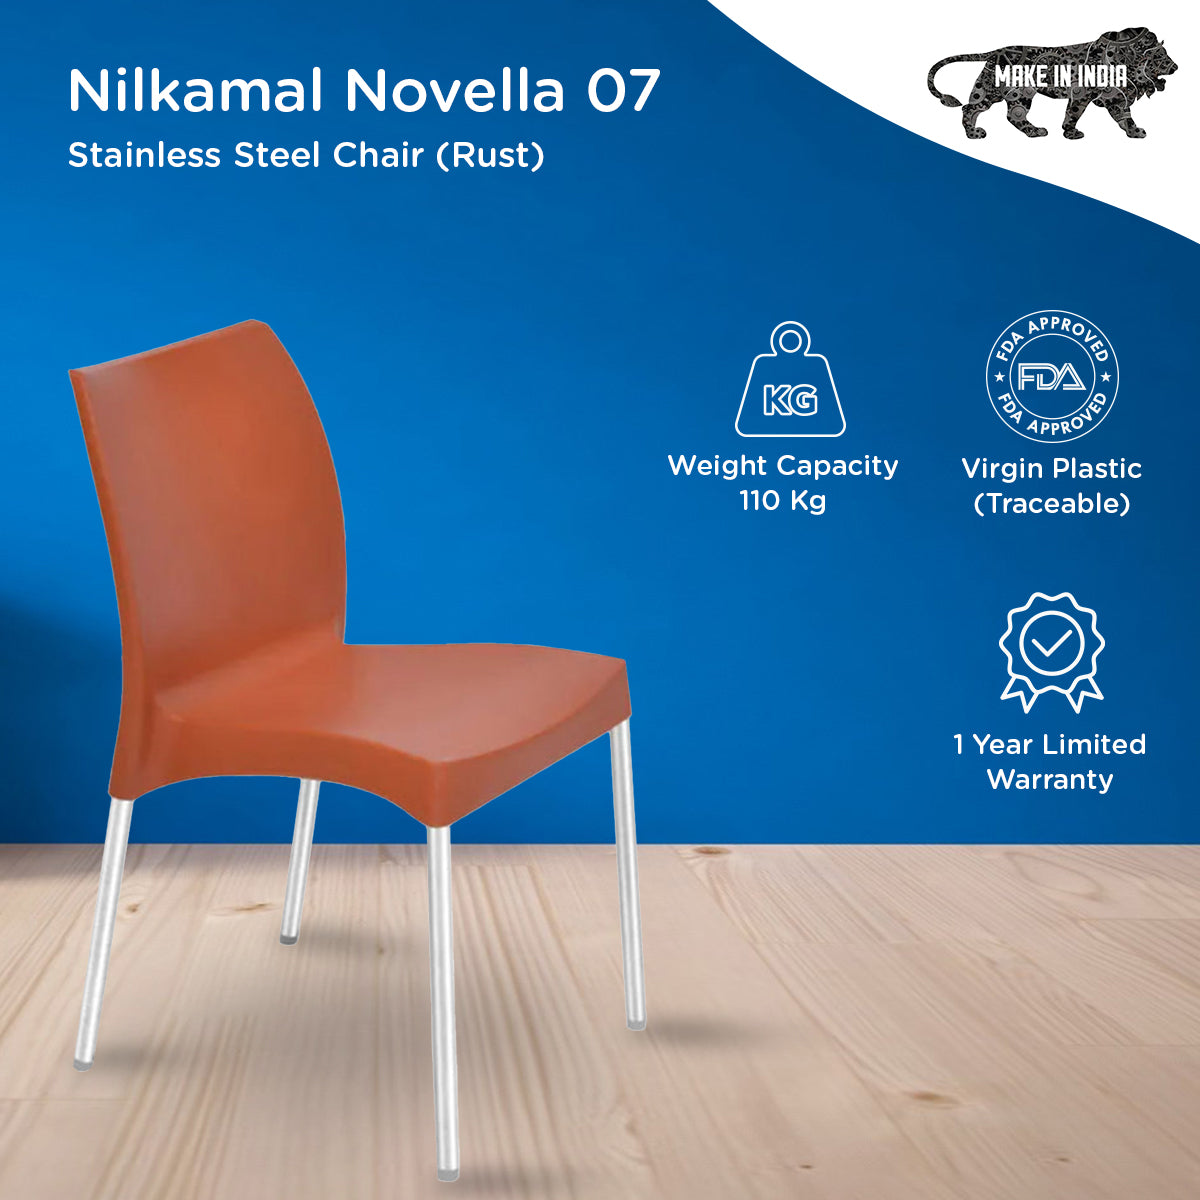 Nilkamal Novella 07 Stainless Steel Chair (Rust)